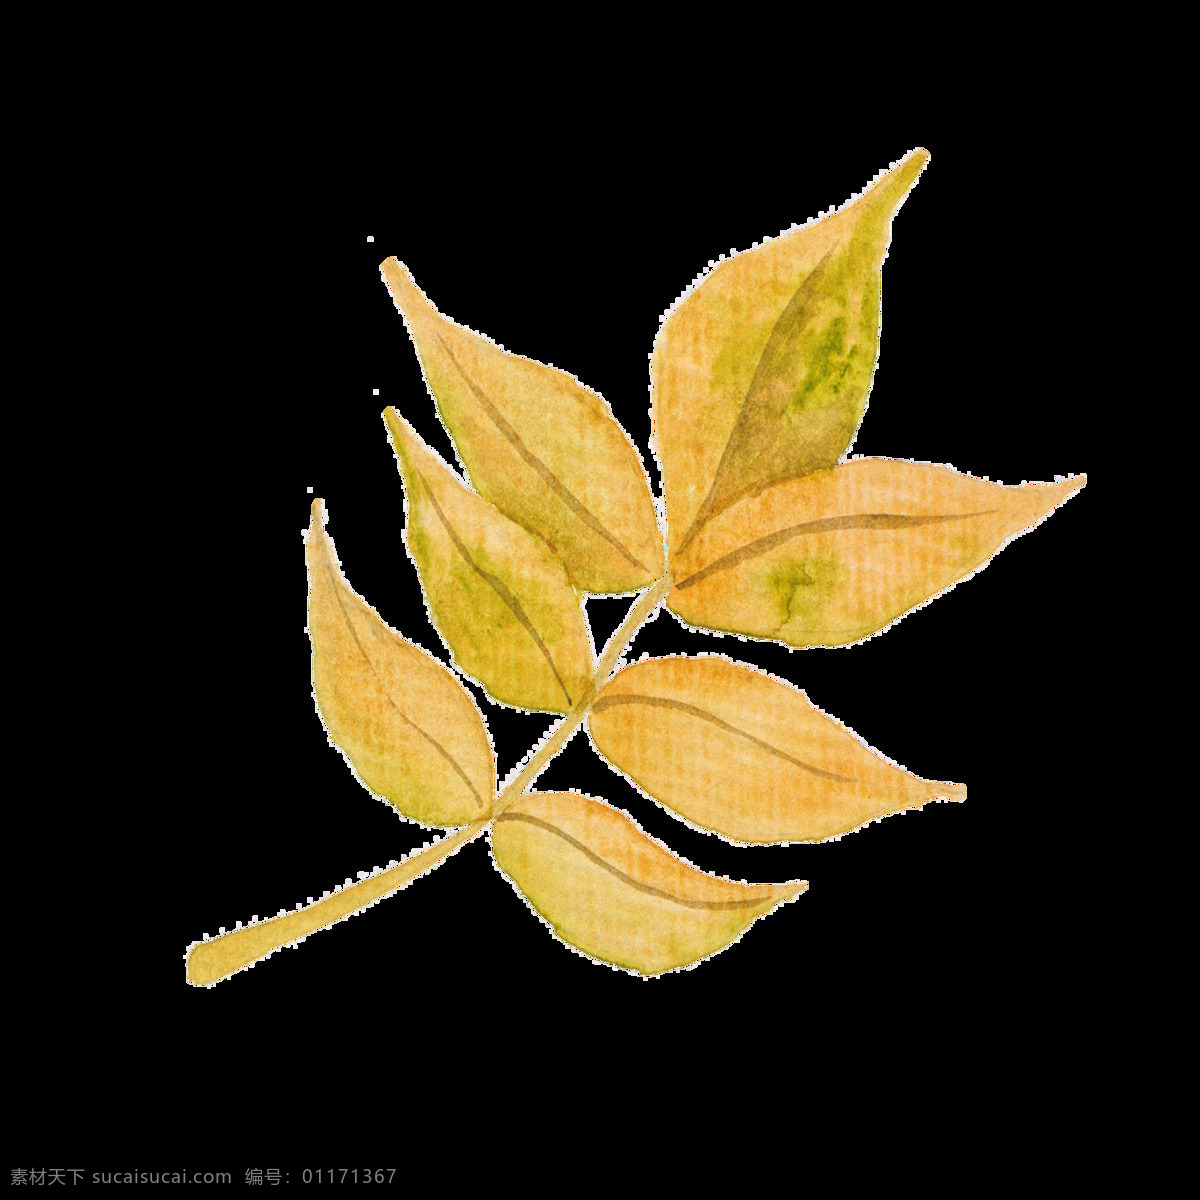 秋天 枯叶 透明 装饰 黄色 叶子 枯萎 矢量素材 设计素材